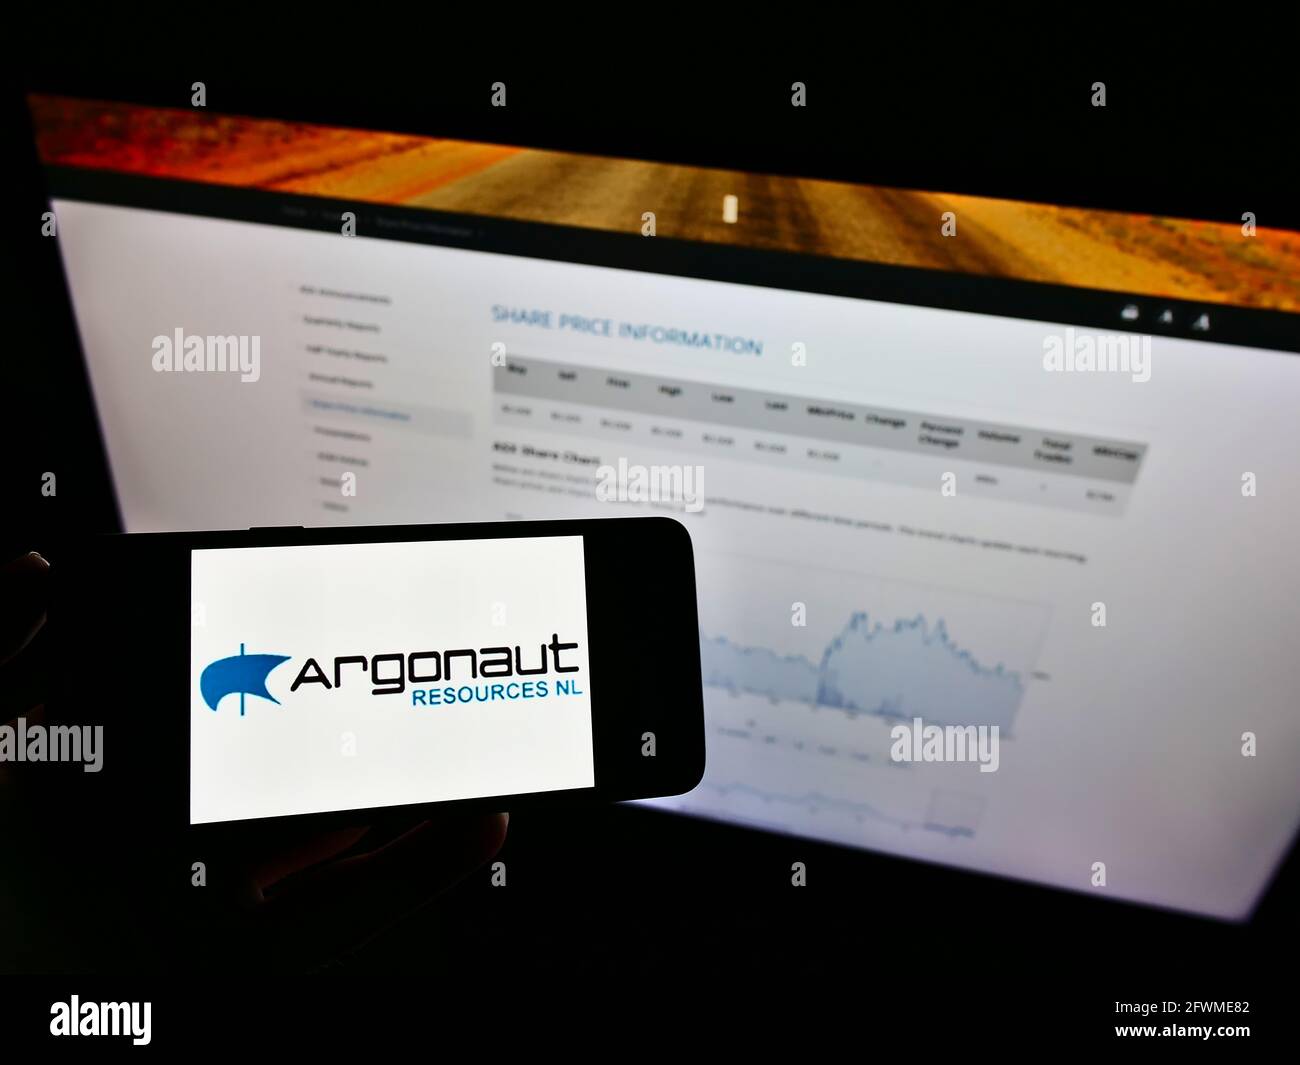 Persona che detiene cellulare con il logo commerciale della società mineraria australiana Argonaut risorse NL sullo schermo di fronte al sito web. Mettere a fuoco il display del telefono. Foto Stock